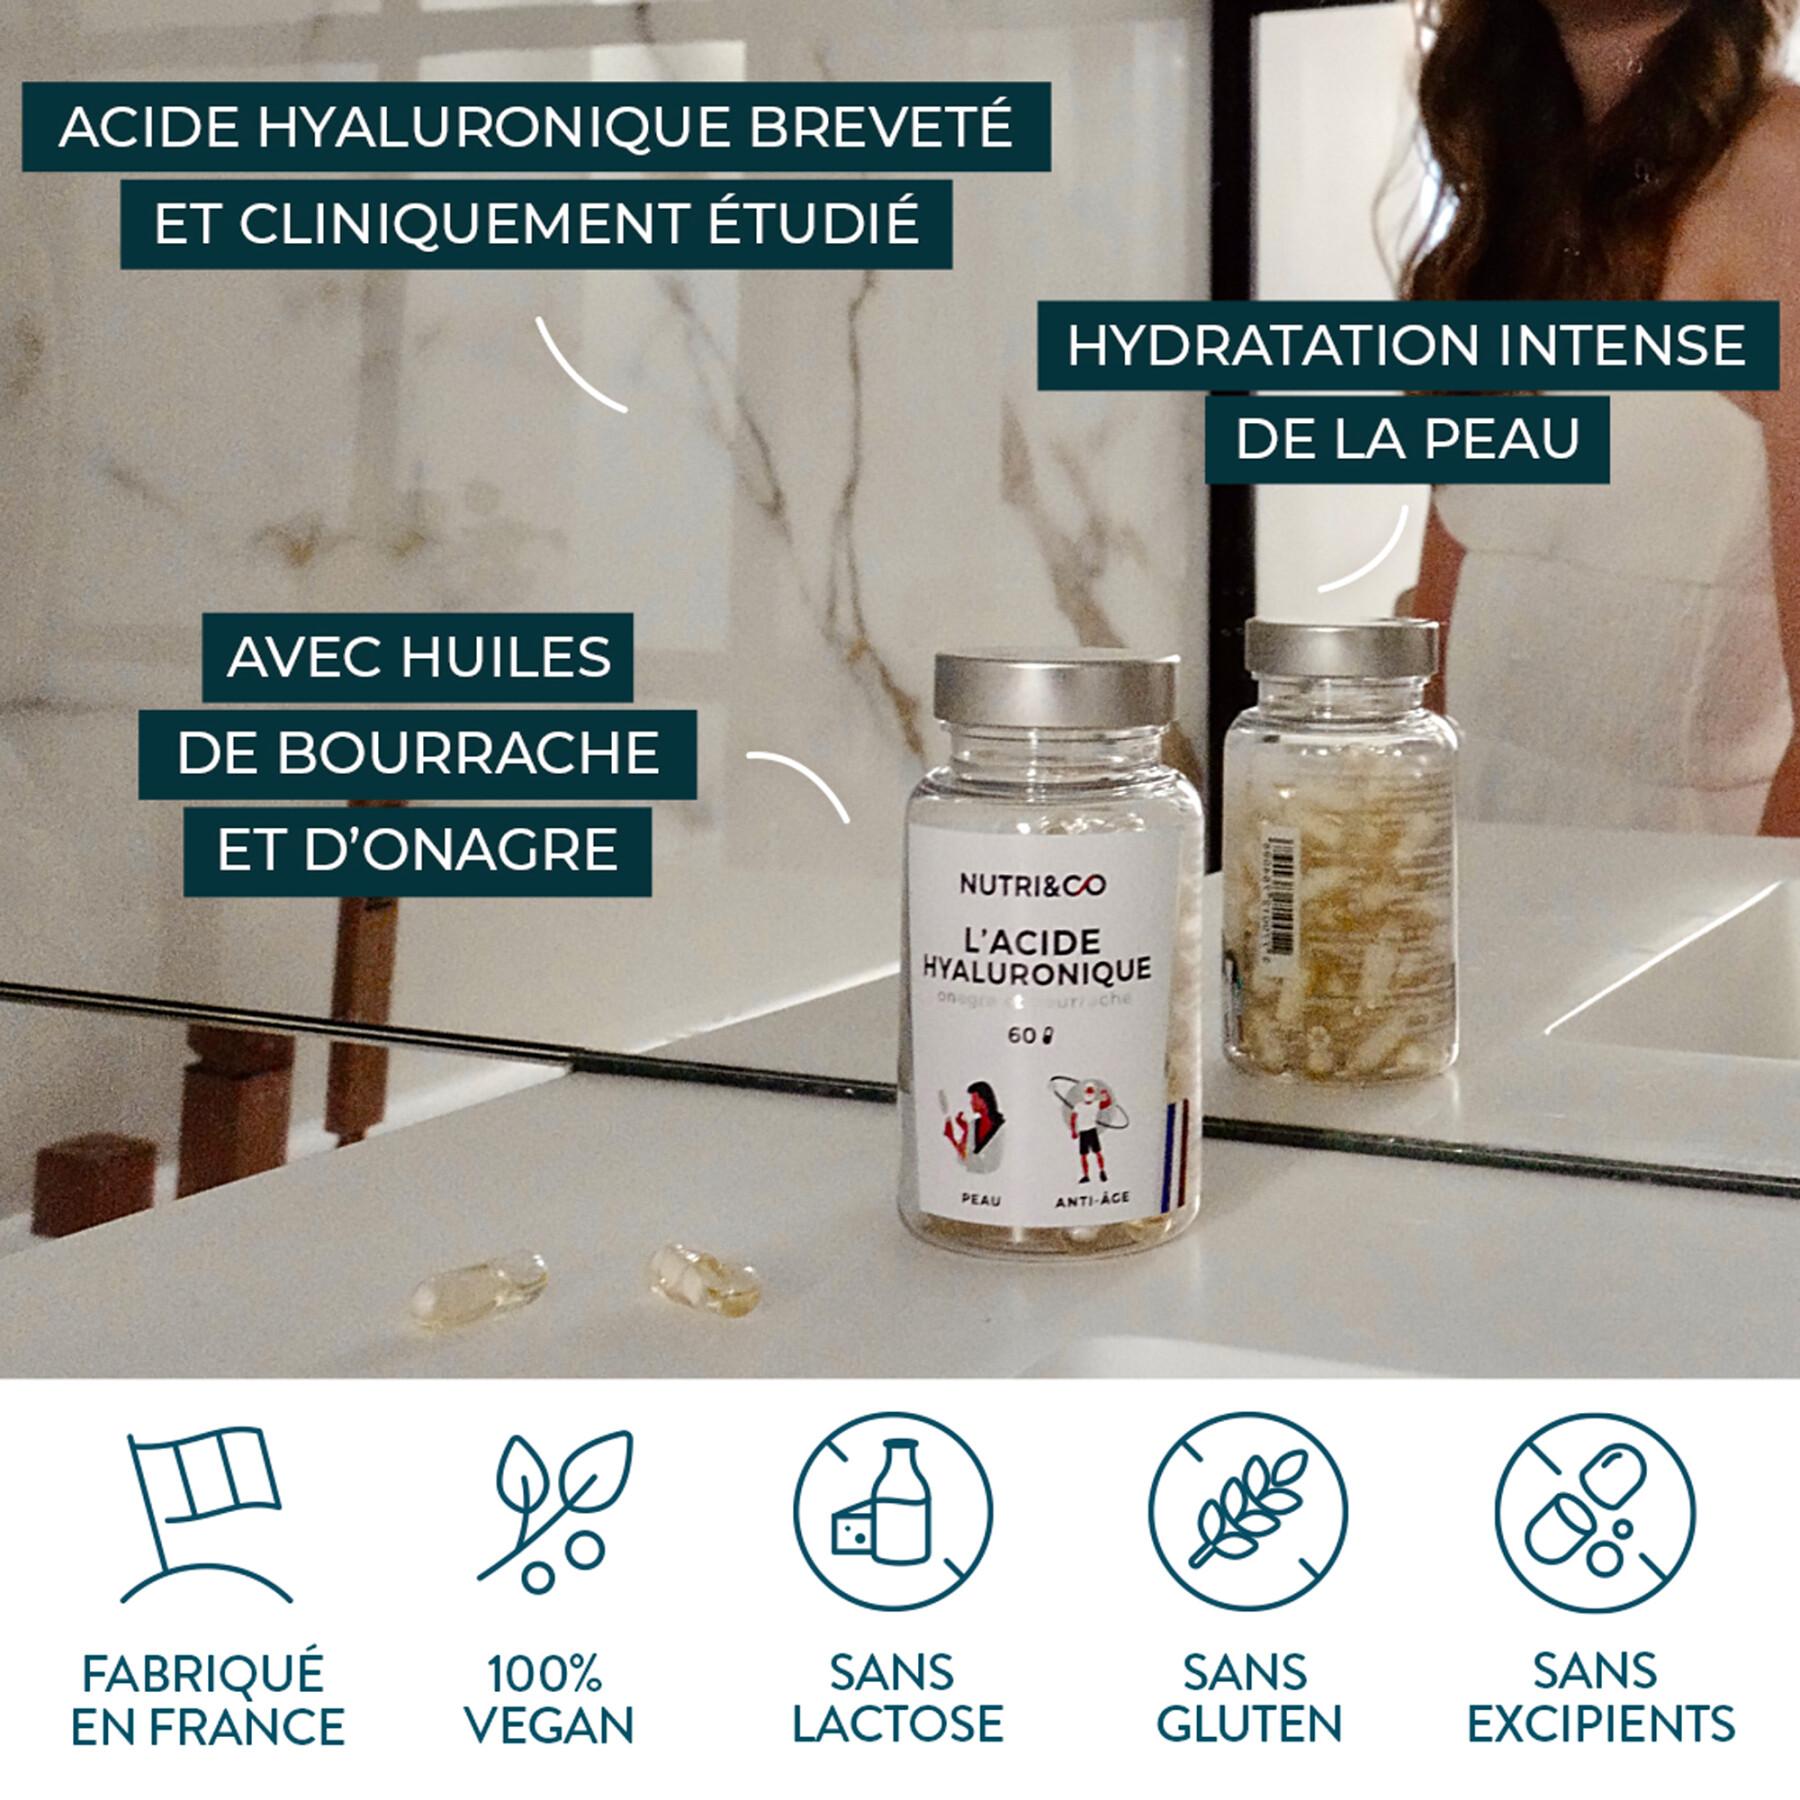 Tillskott med hyaluronsyra nattljus + gurkört - 60 kapslar - Frankrike Nutri&Co